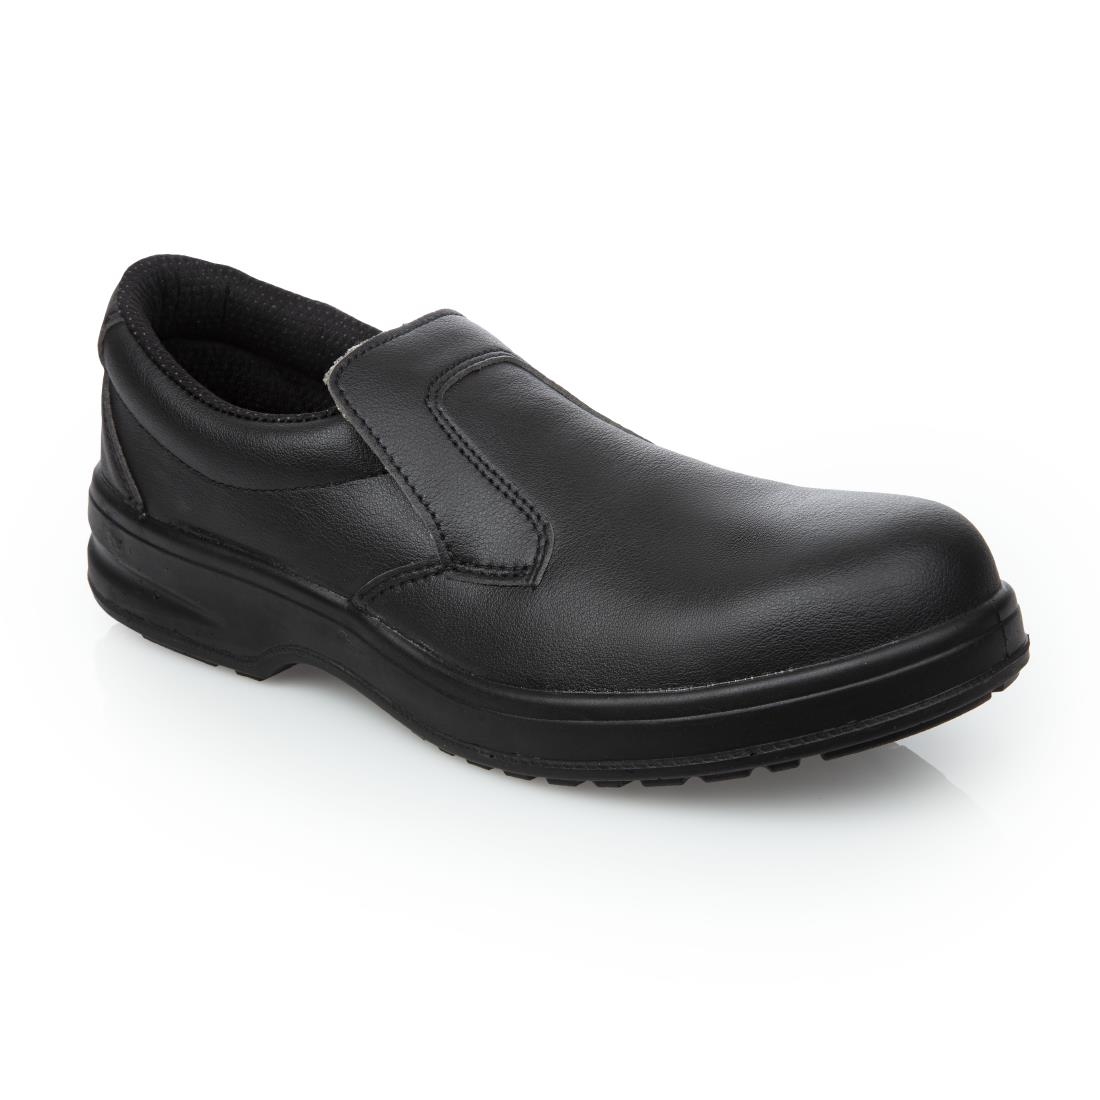 Slipbuster Lite Slip On Safety Shoes Black - Kirklands